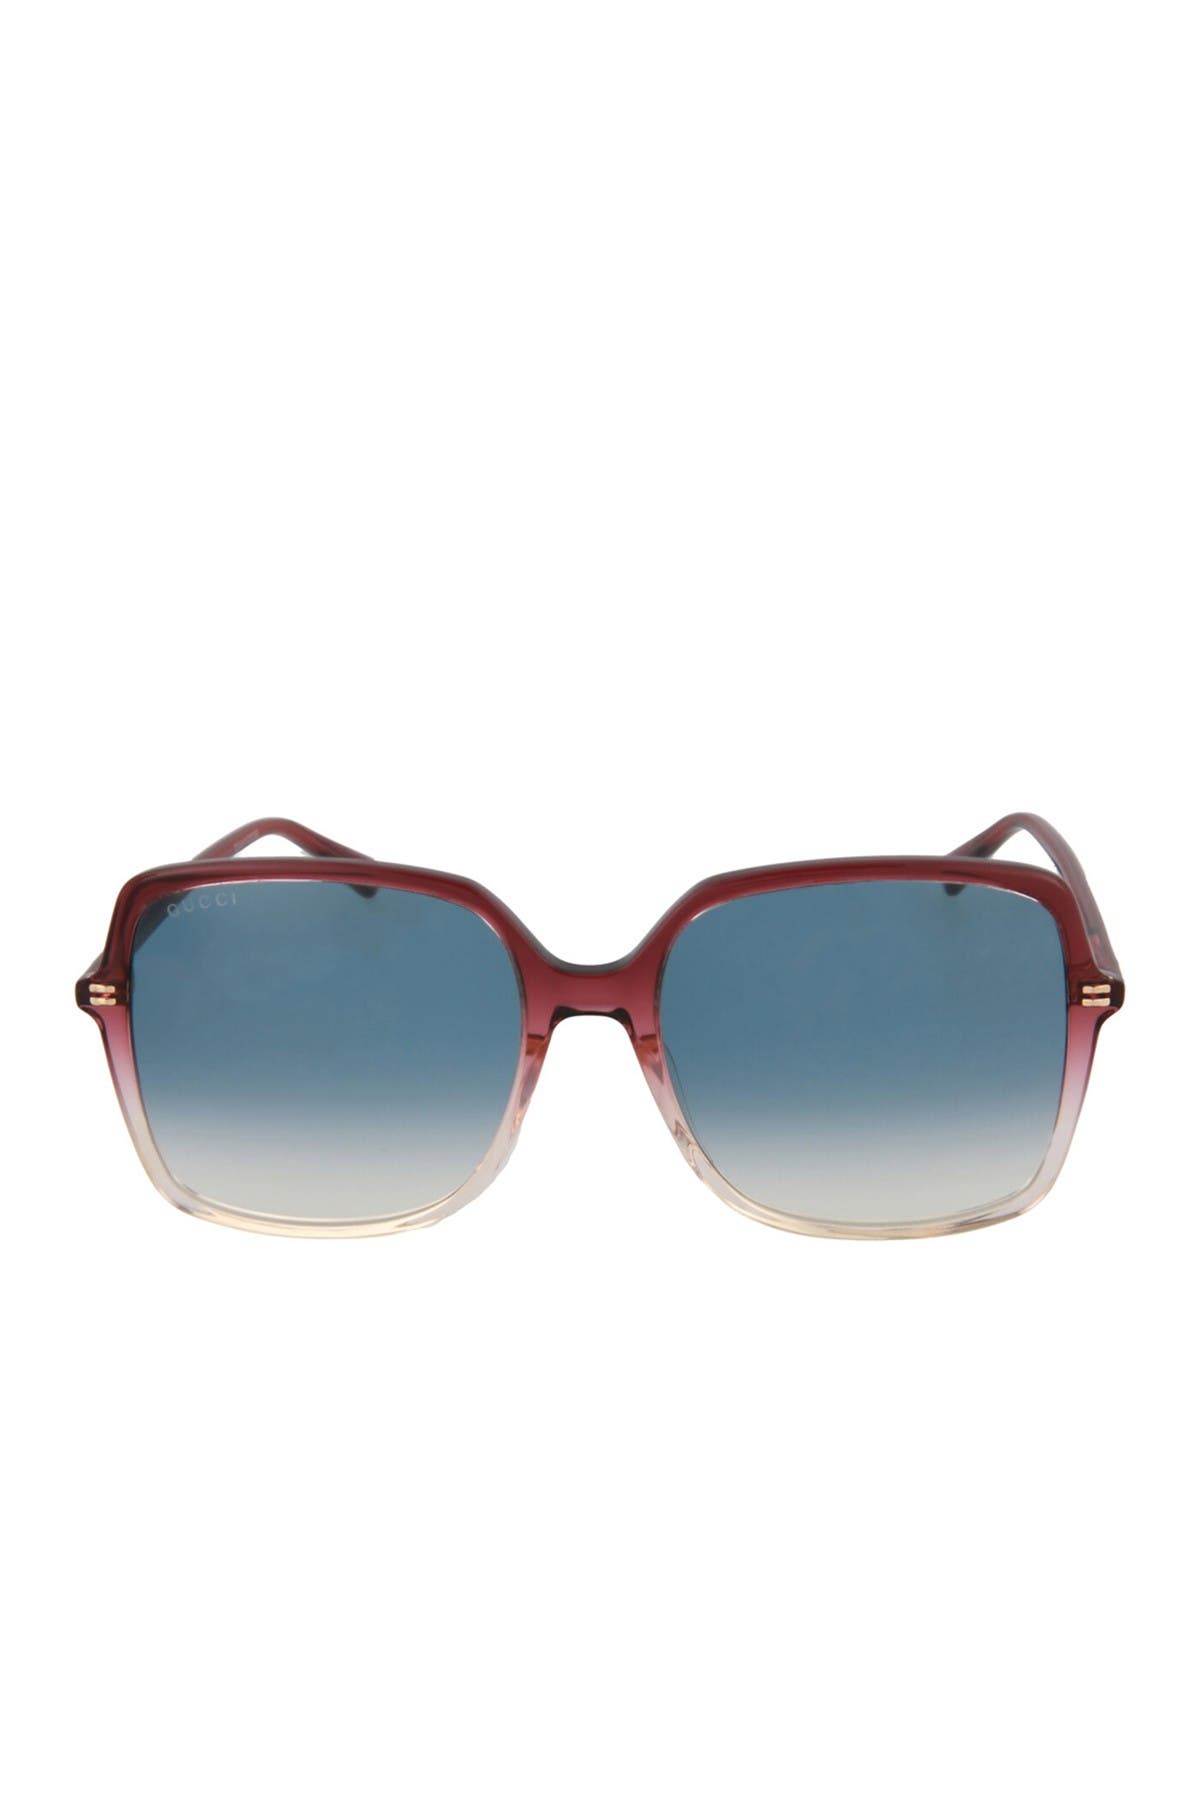 Gucci 57mm Core Square Sunglasses In Red